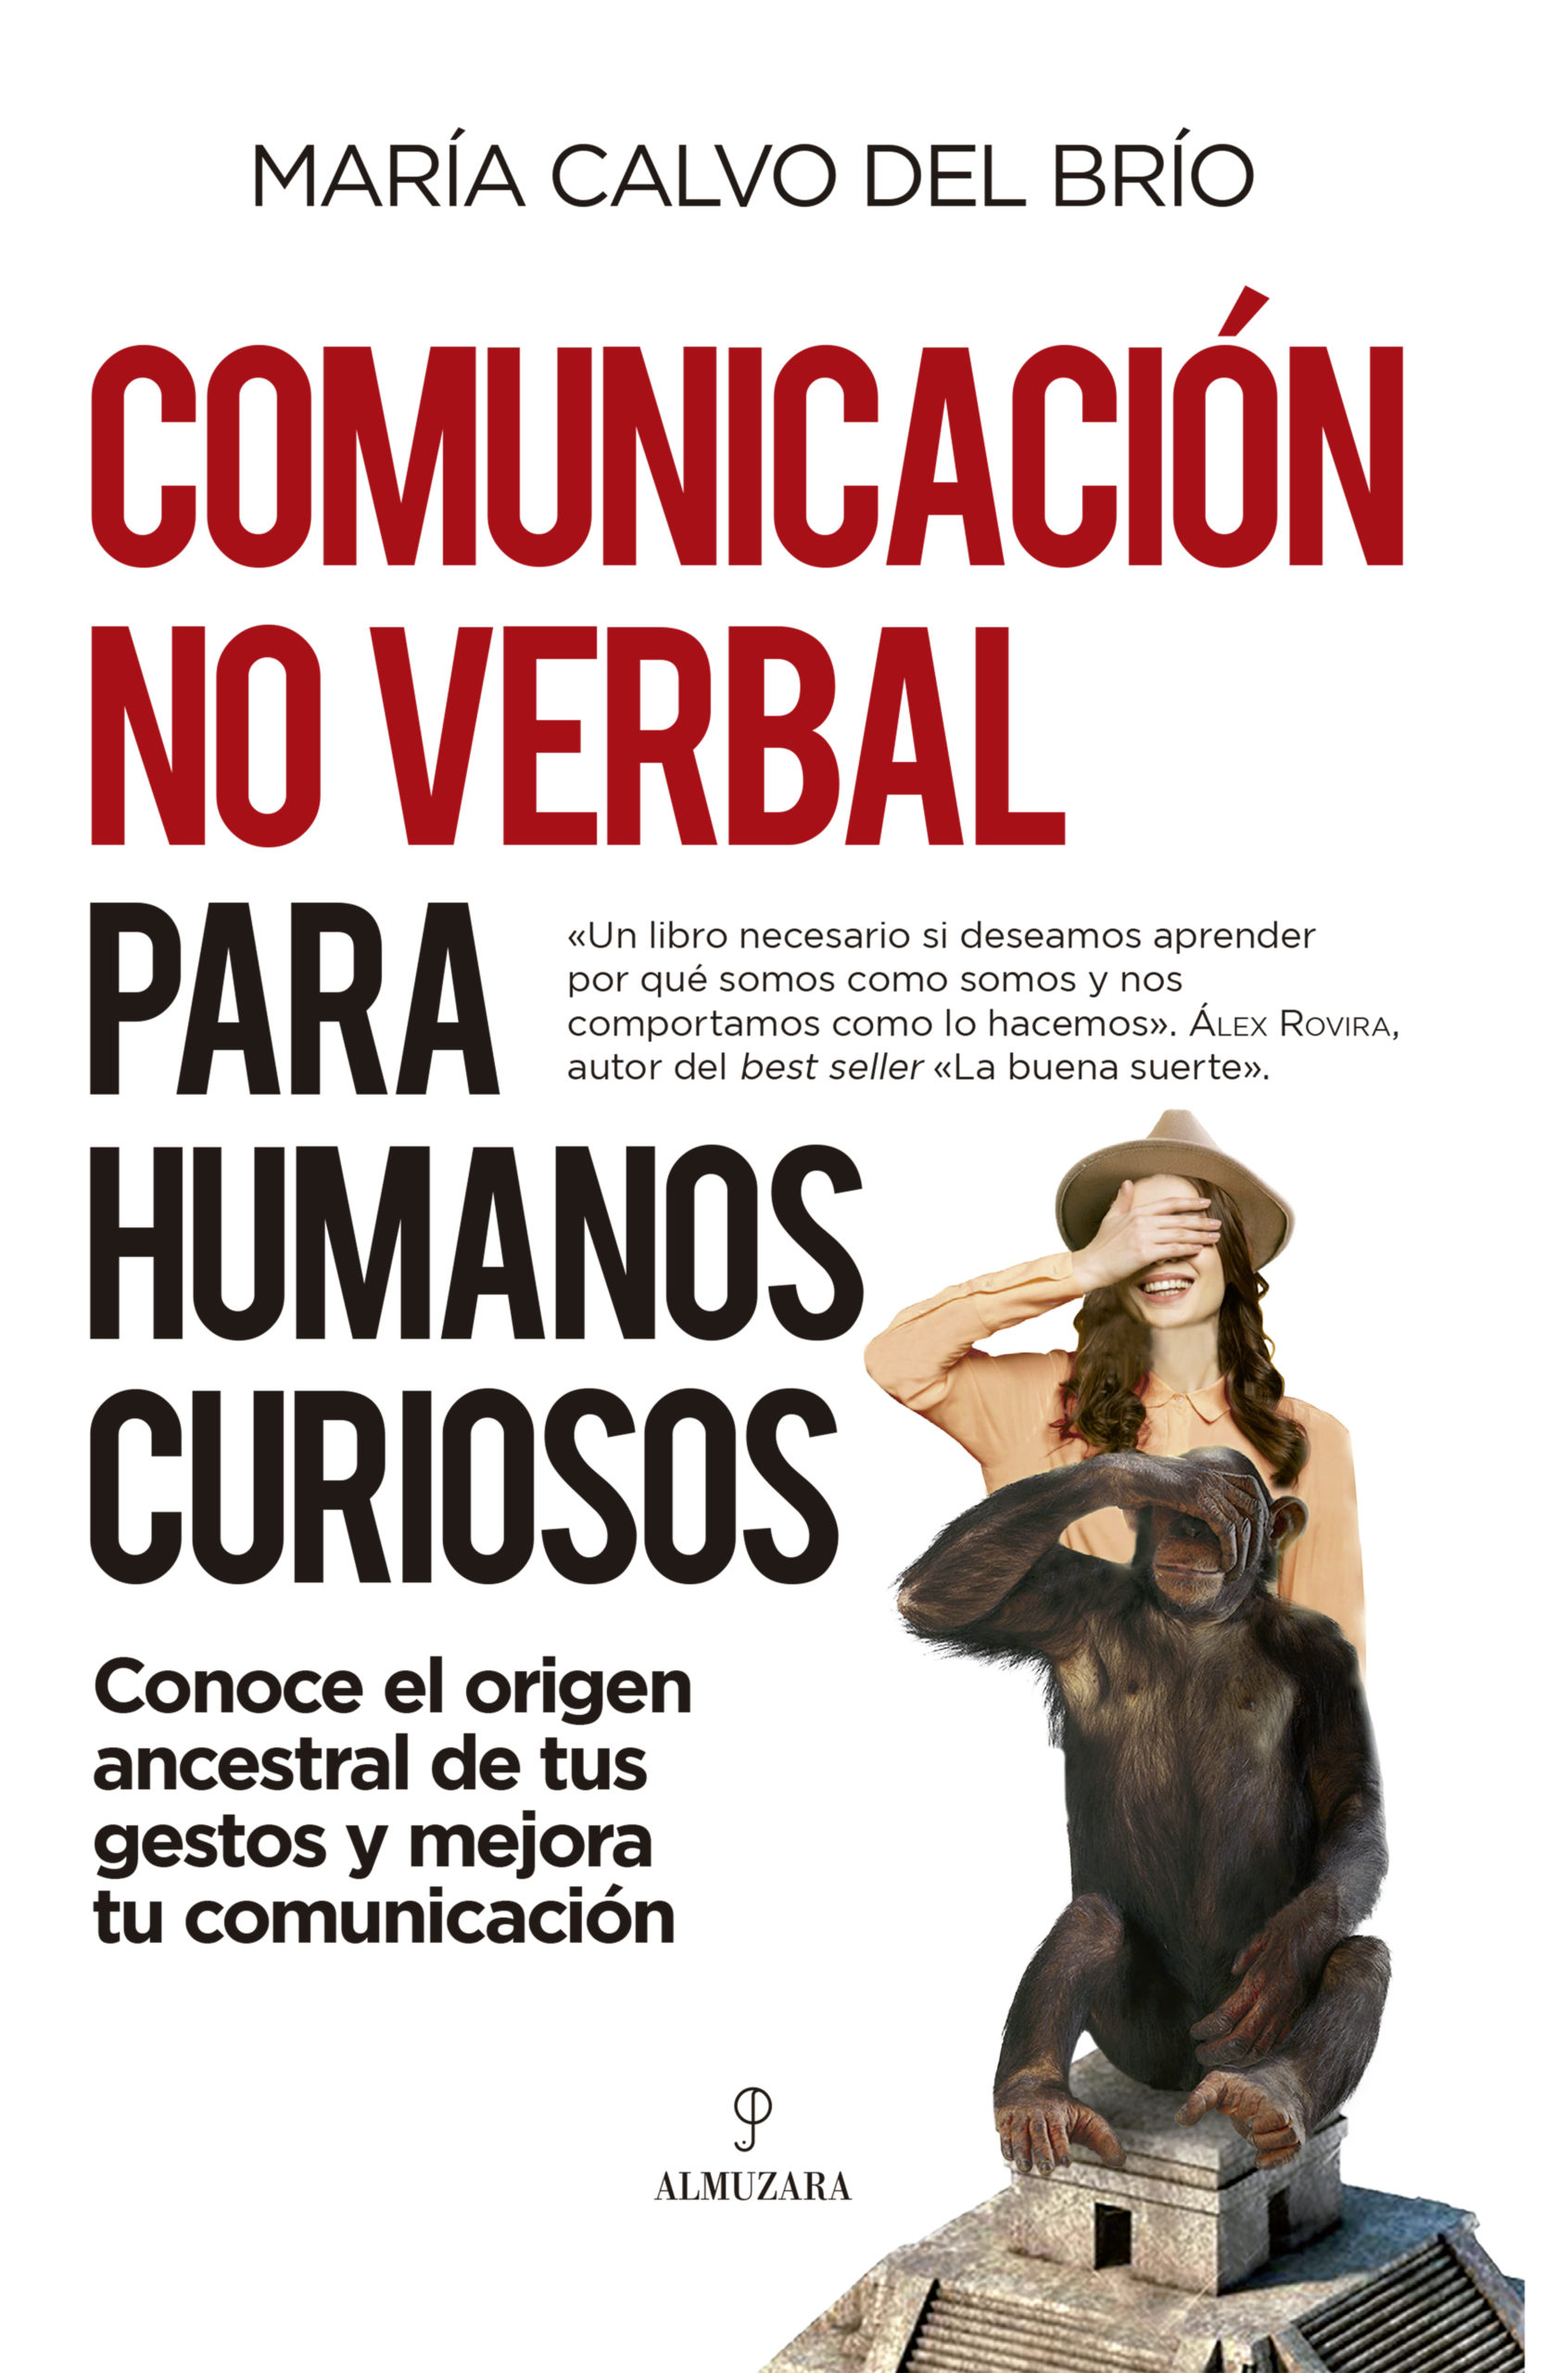 Comunicación no verbal para humanos curiosos, un libro de María Calvo del Brío. Edición 2021.